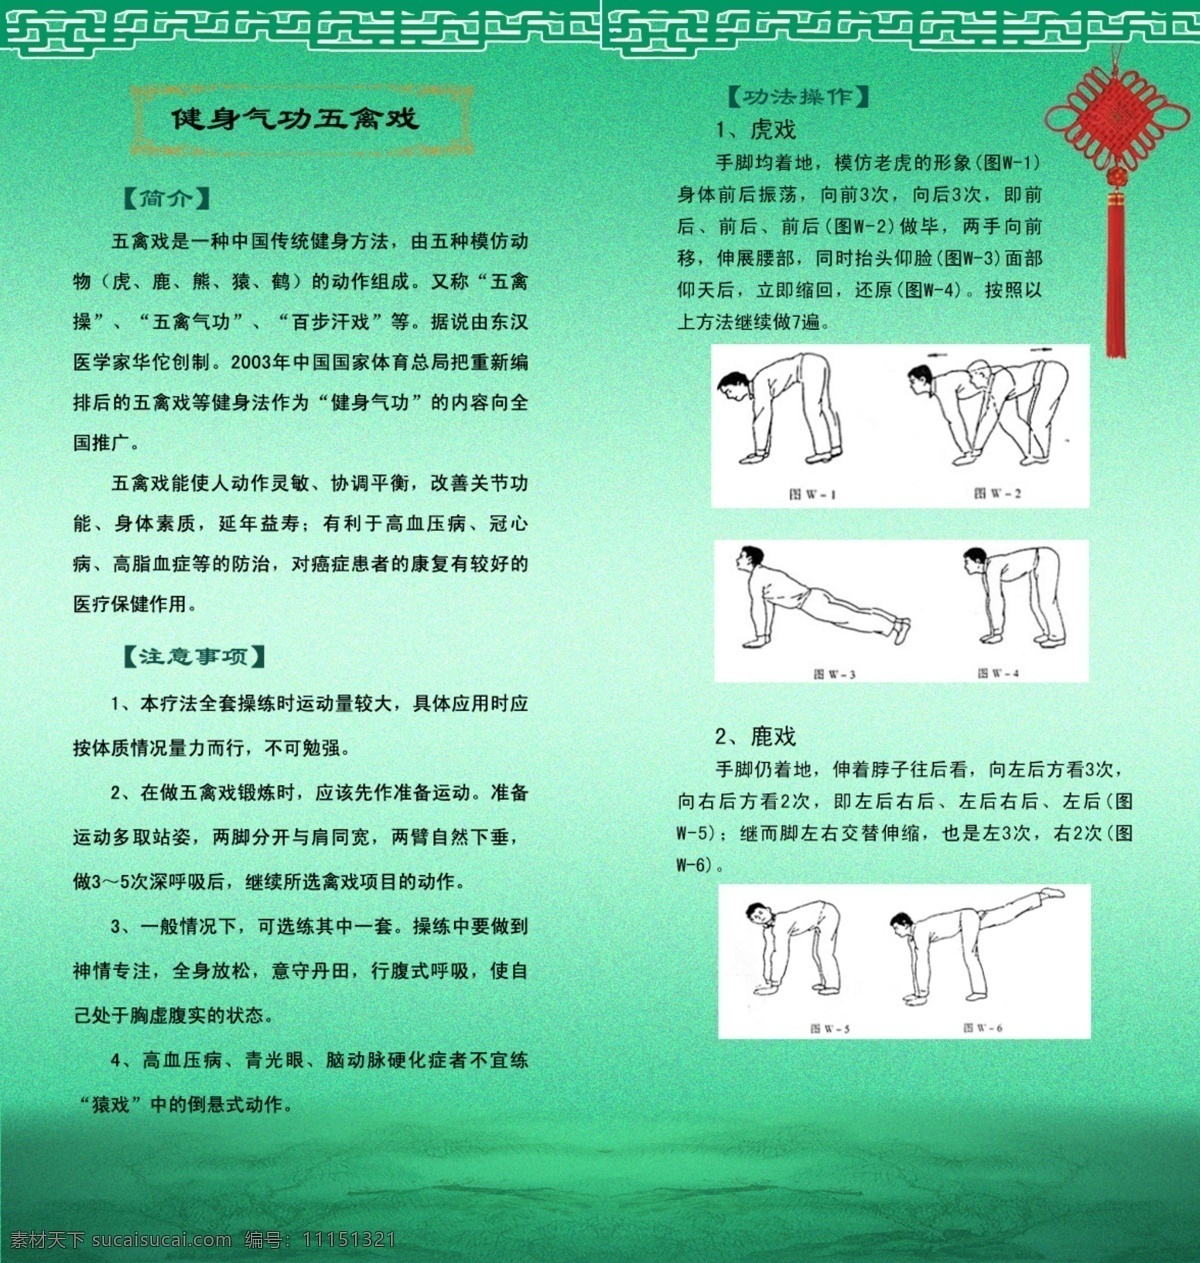 五禽戏 二 折页 反面 二折页 中医药 养生 传统体育 中国结 分层